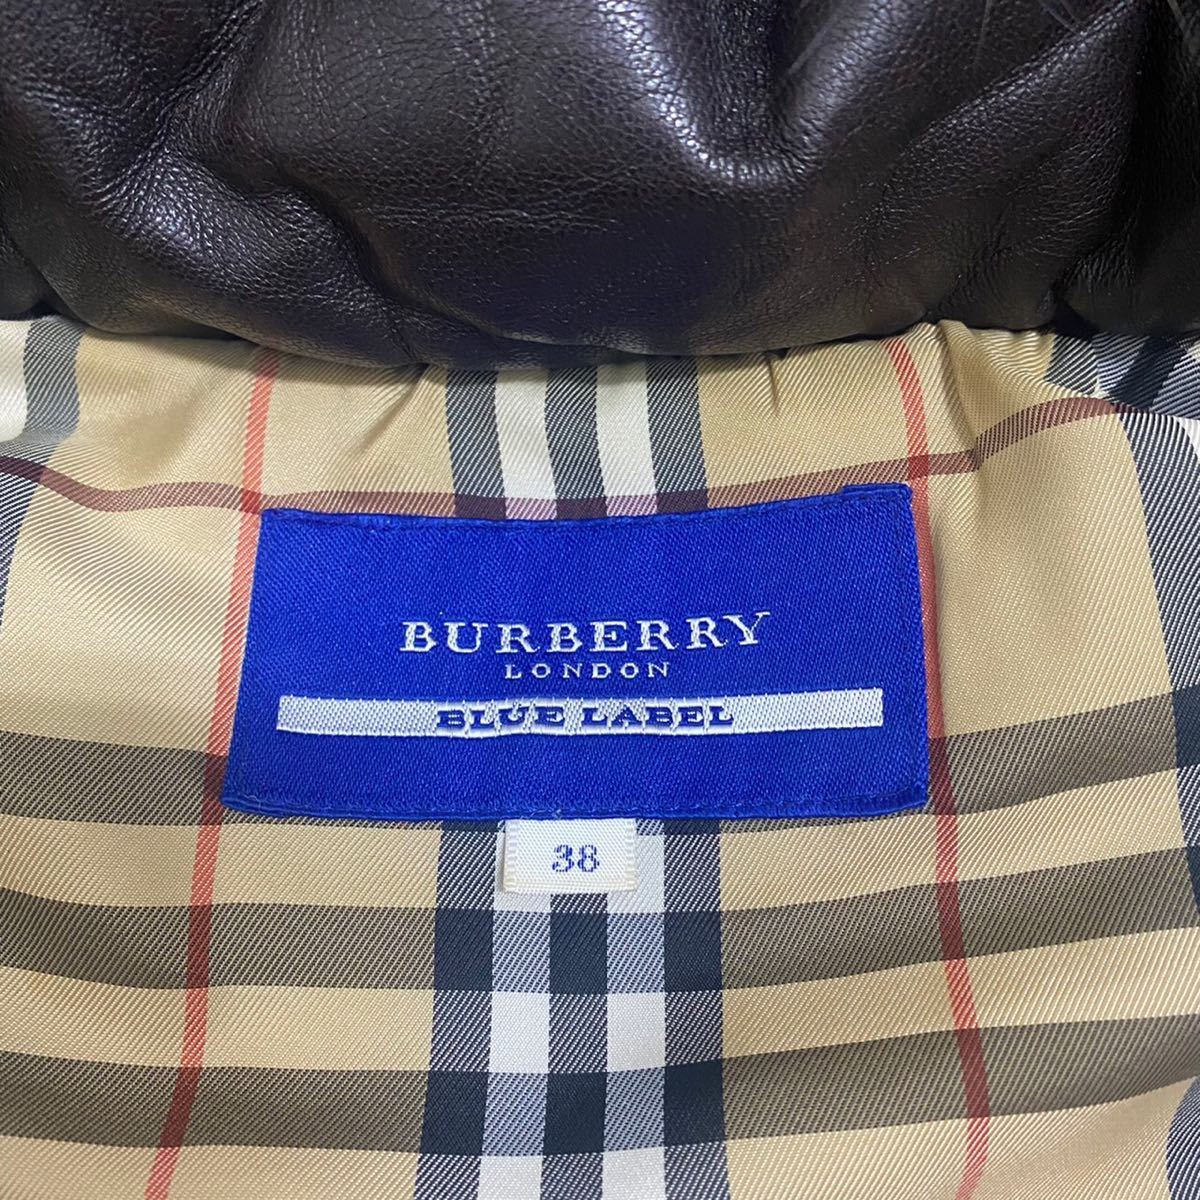 【お気に入り】 新品バーバリー38(M)ワンピース BURBERRY ひざ丈ワンピース